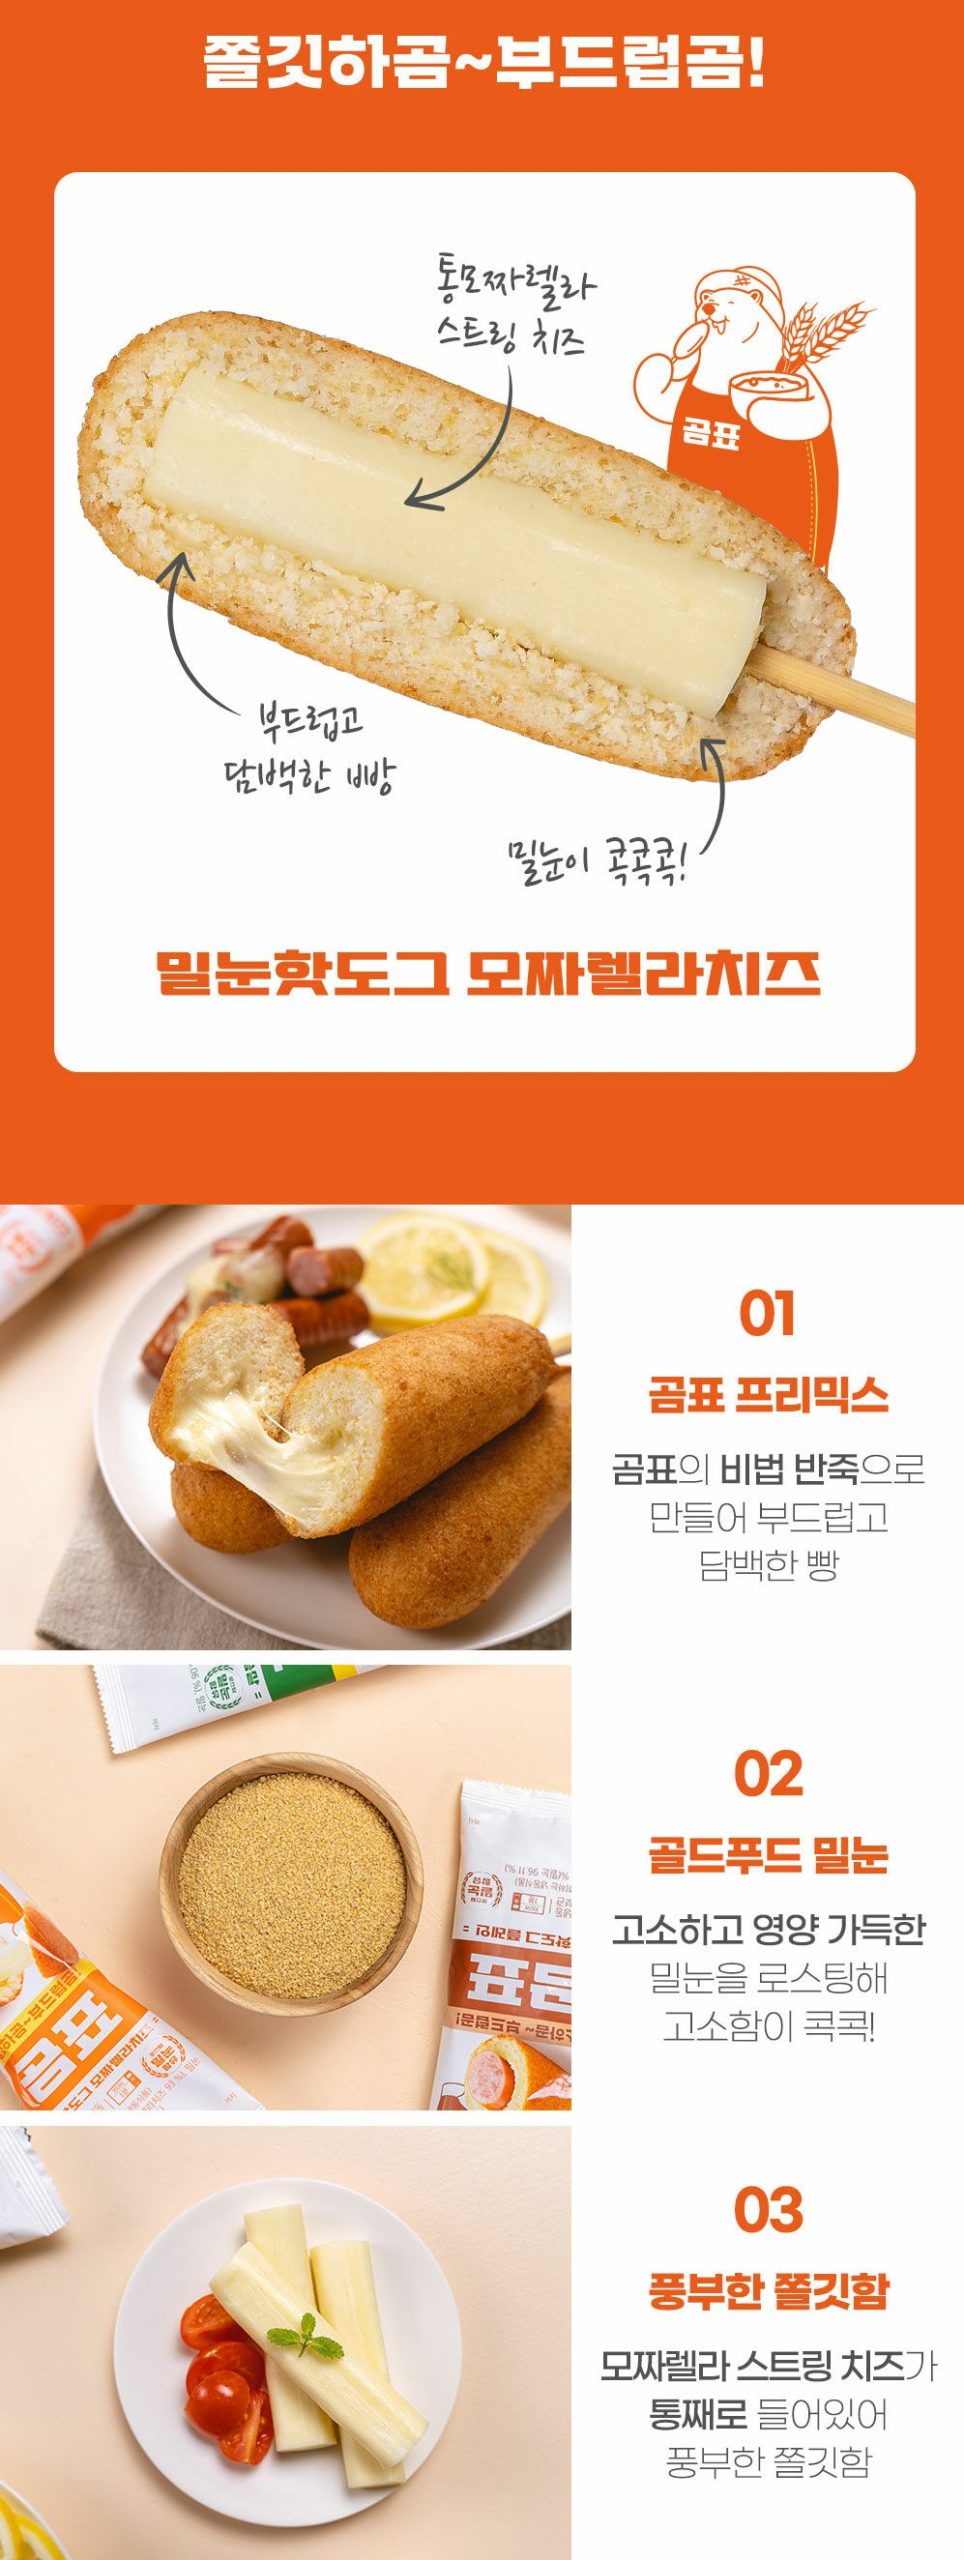 韓國食品-[올반] 곰표밀눈핫도그 (모짜렐라치즈) 80g